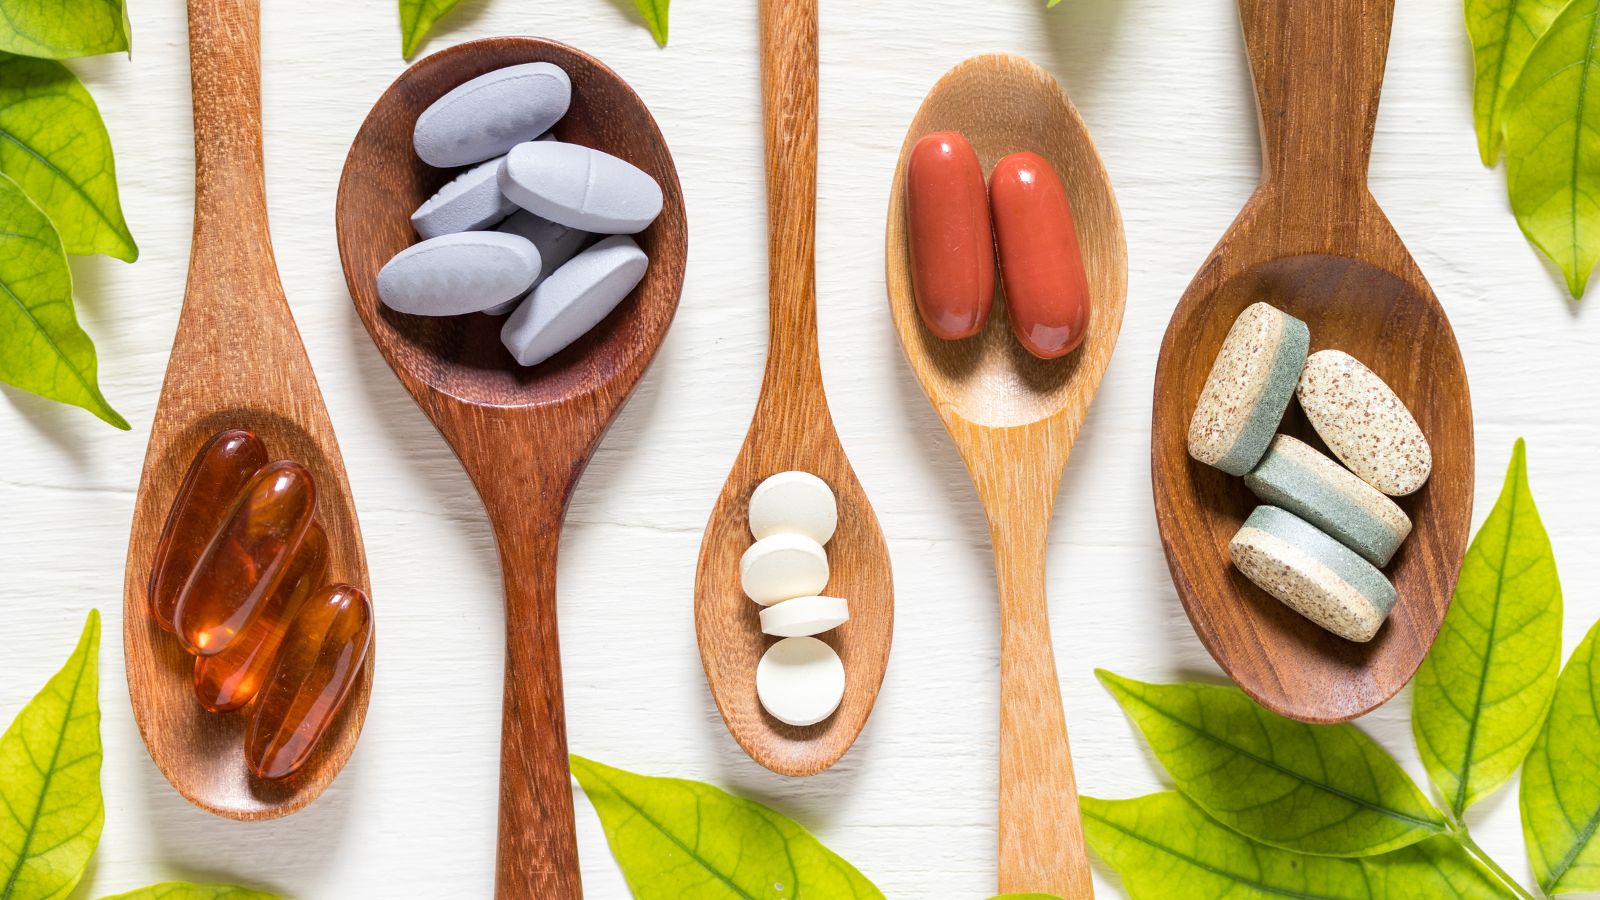 Vitamins displayed on wood spoons.
